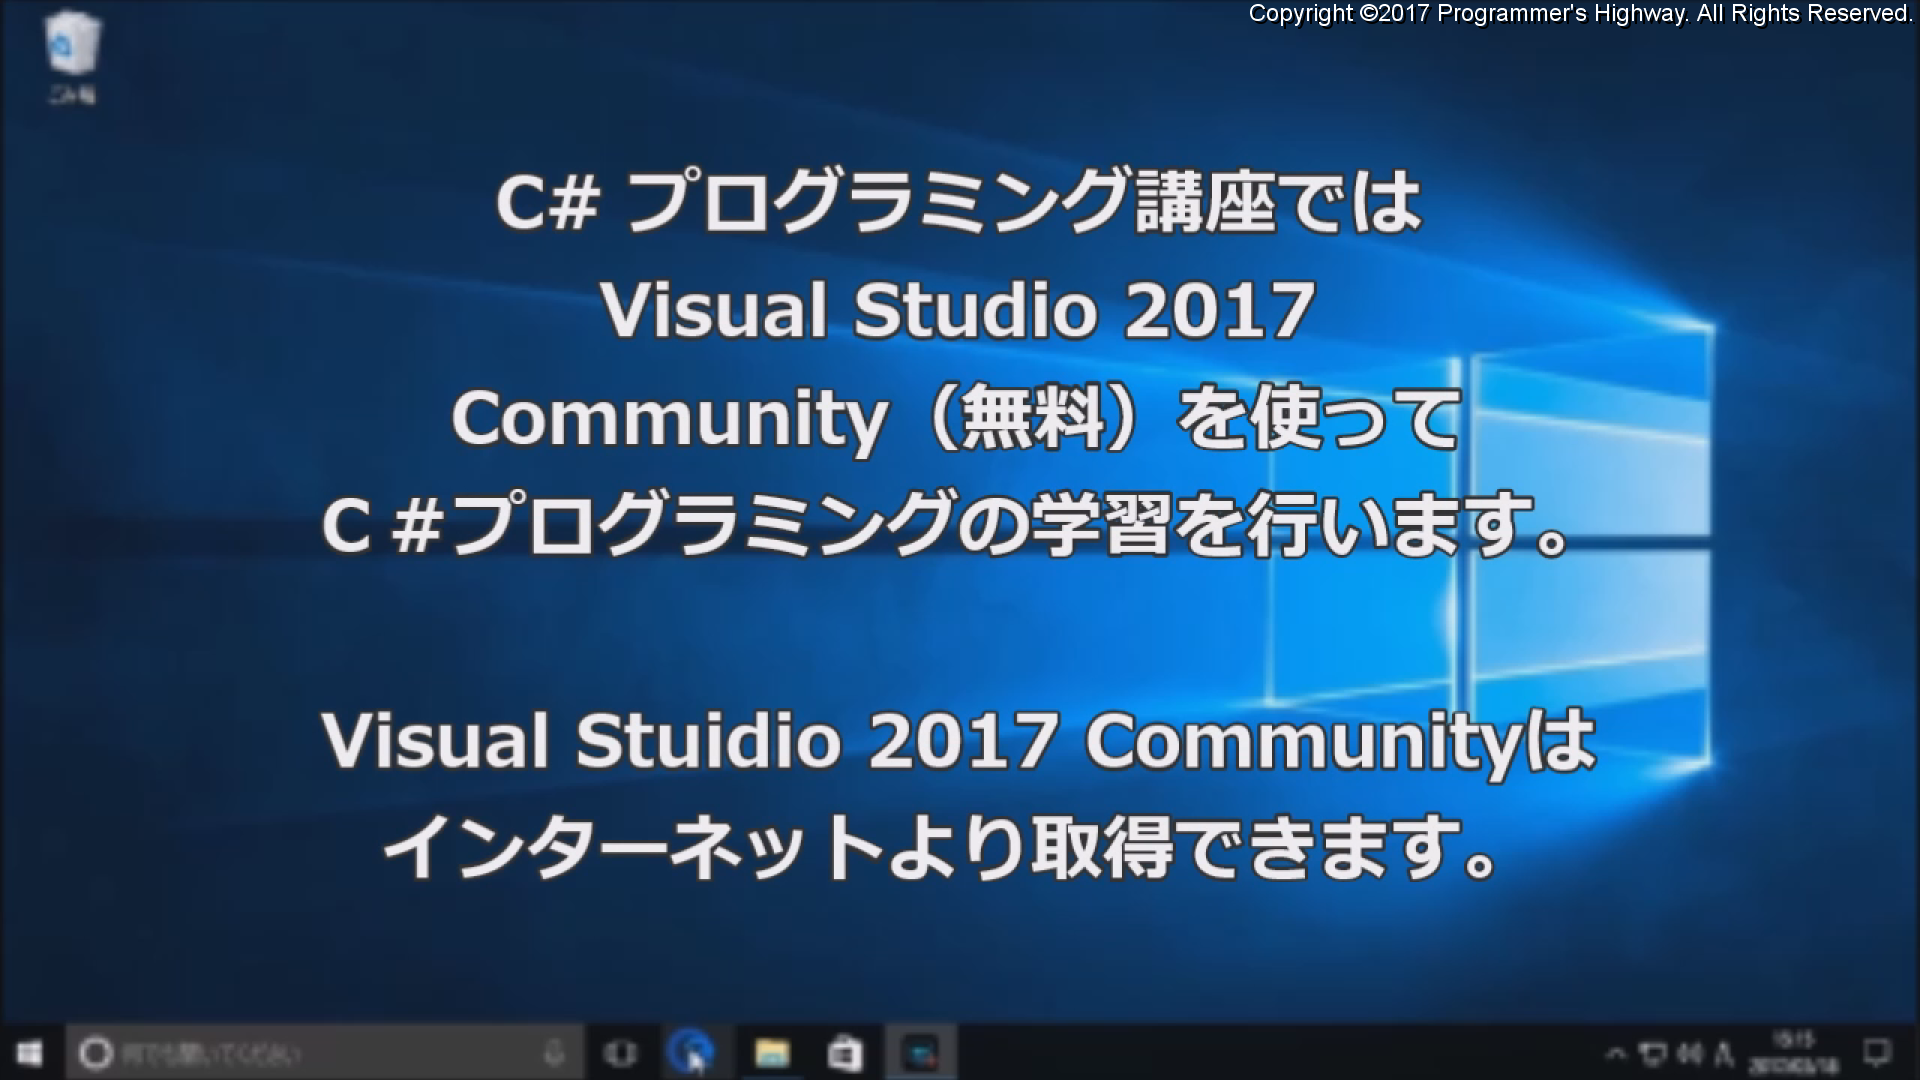 C#プログラミング講座では Visual Studio 2017 Community (無料)を使ってC#プログラミングの学習を行います